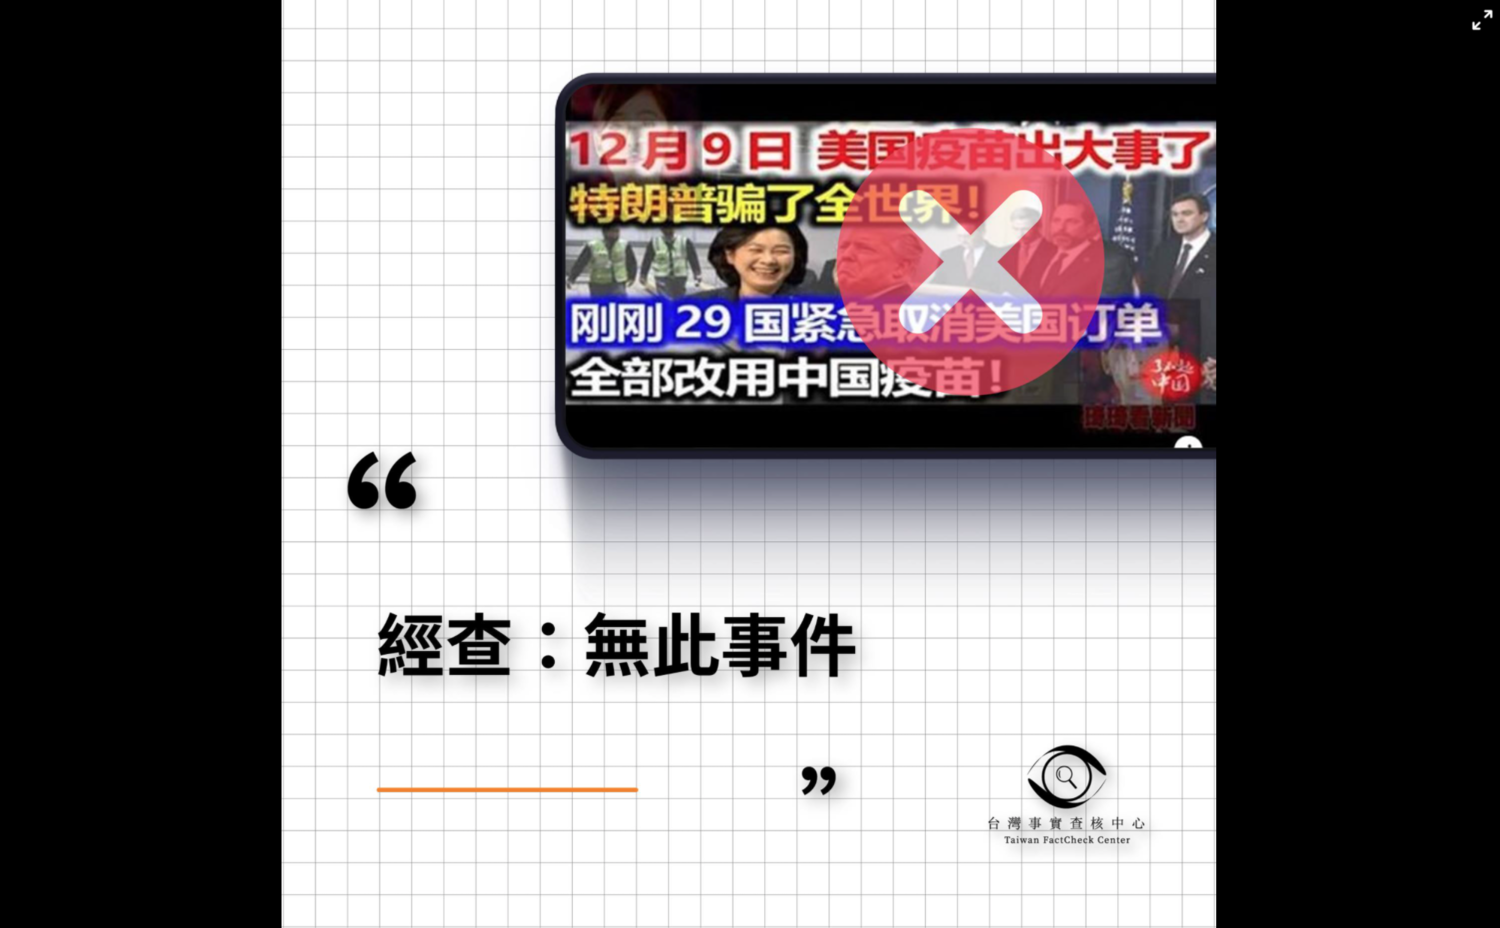 台湾事实查核中心（TFC）指出，讯息出自中国内容农场和论坛，近期并未有「29国取消美国订单、改用中国疫苗」的任何报导，传言与实际情形不符，为「错误」讯息。   图：翻摄TFC脸书(photo:NewTalk)